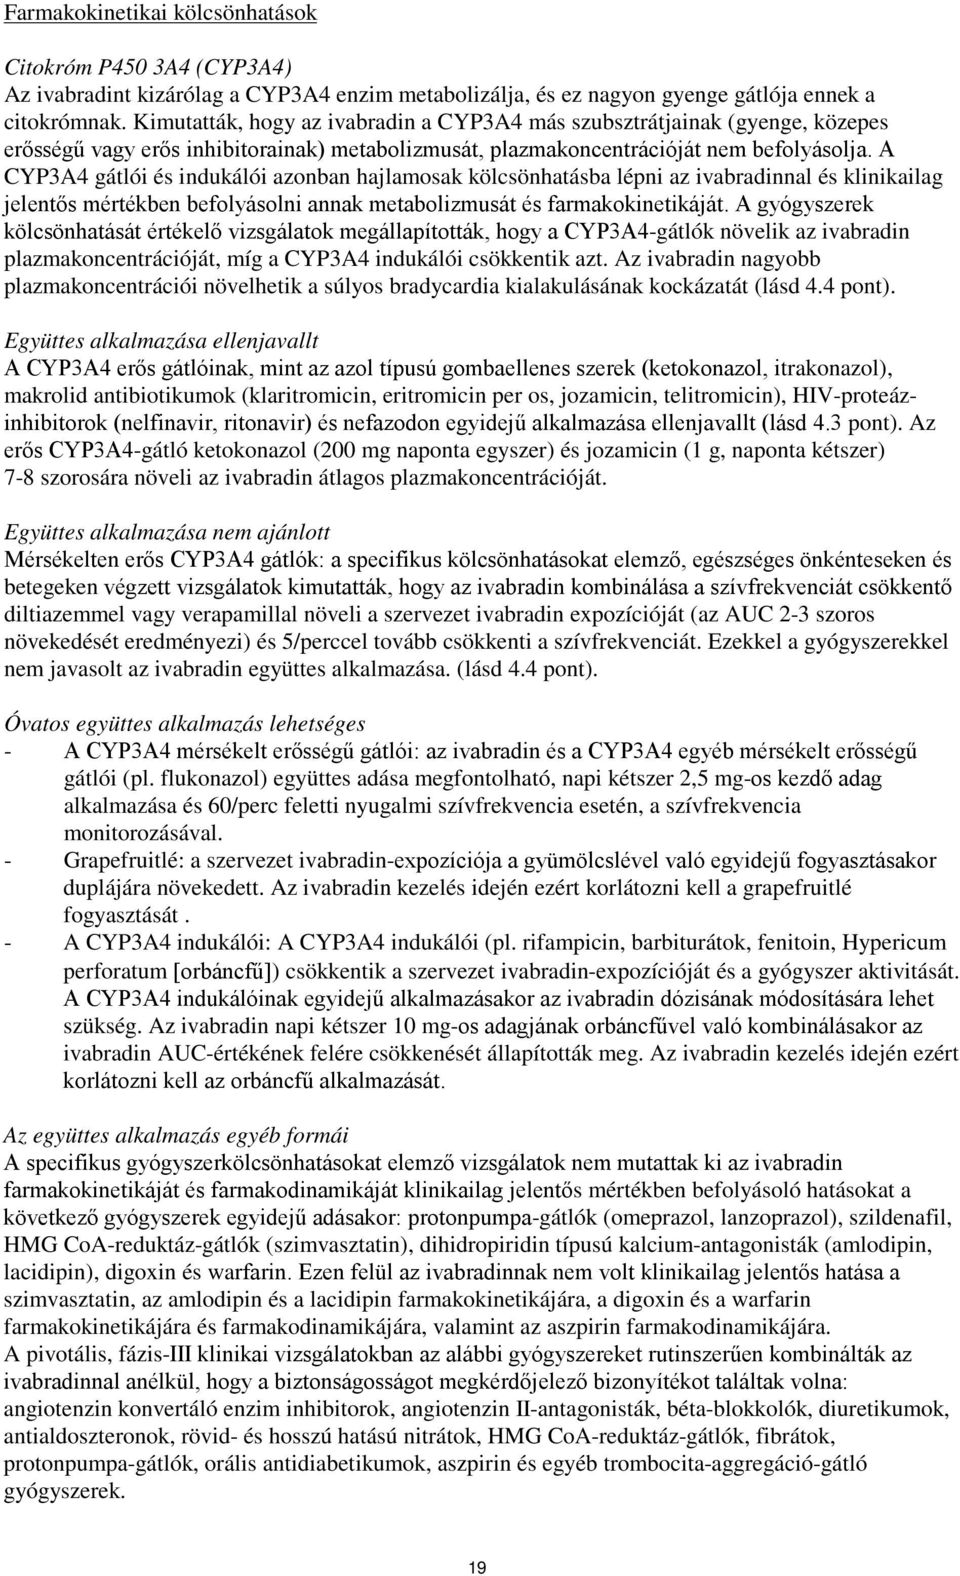 A CYP3A4 gátlói és indukálói azonban hajlamosak kölcsönhatásba lépni az ivabradinnal és klinikailag jelentős mértékben befolyásolni annak metabolizmusát és farmakokinetikáját.